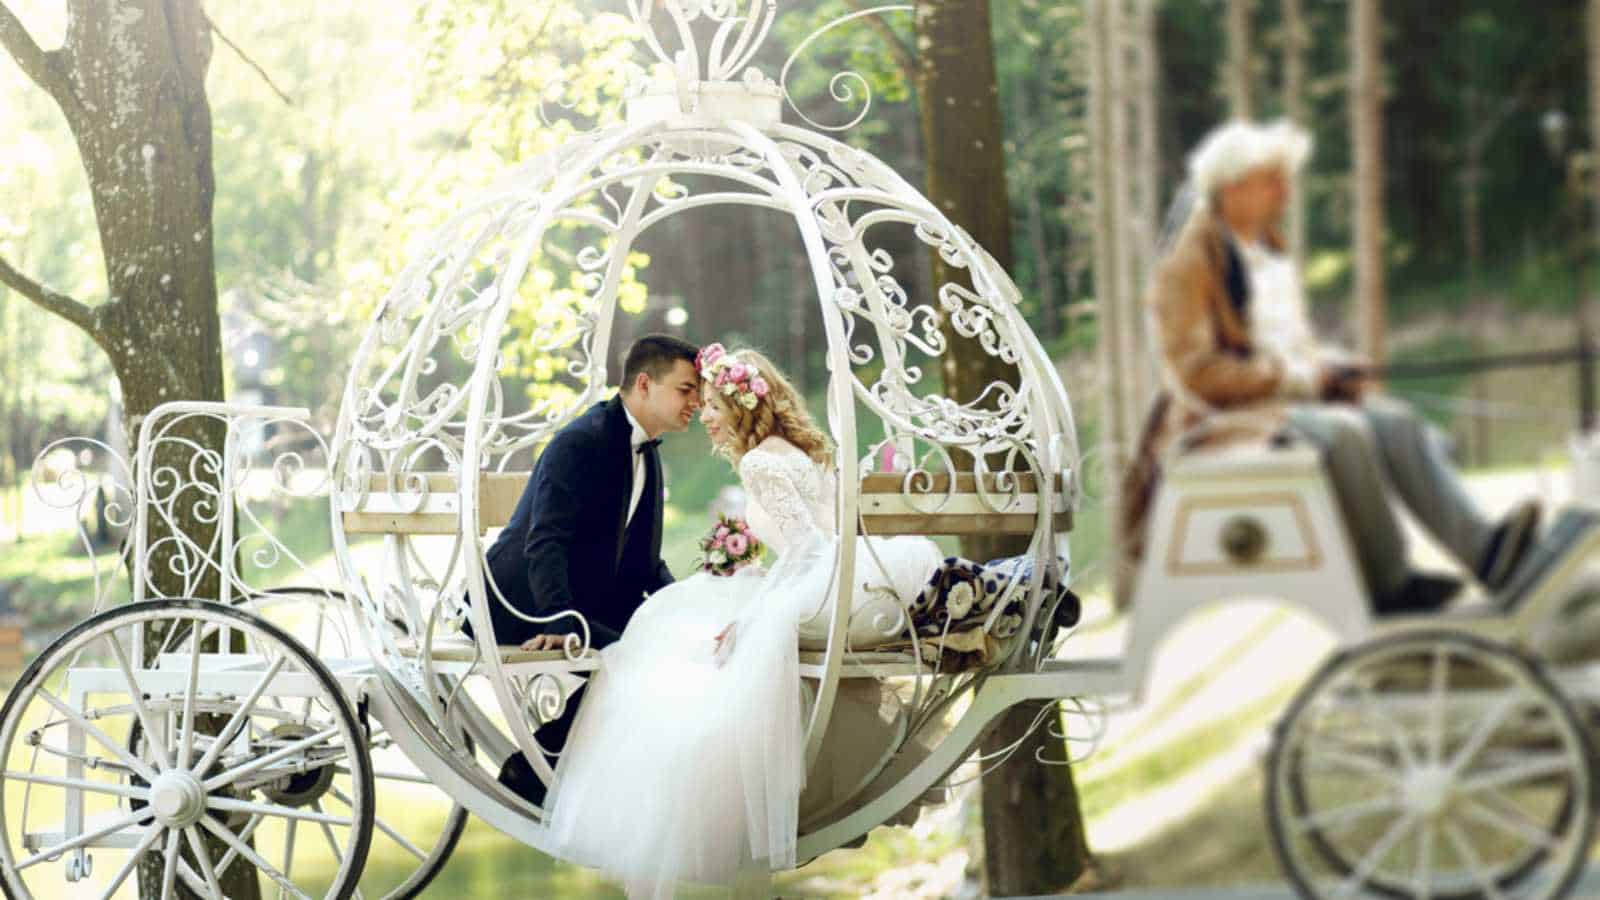 Disney fairy tale weddings